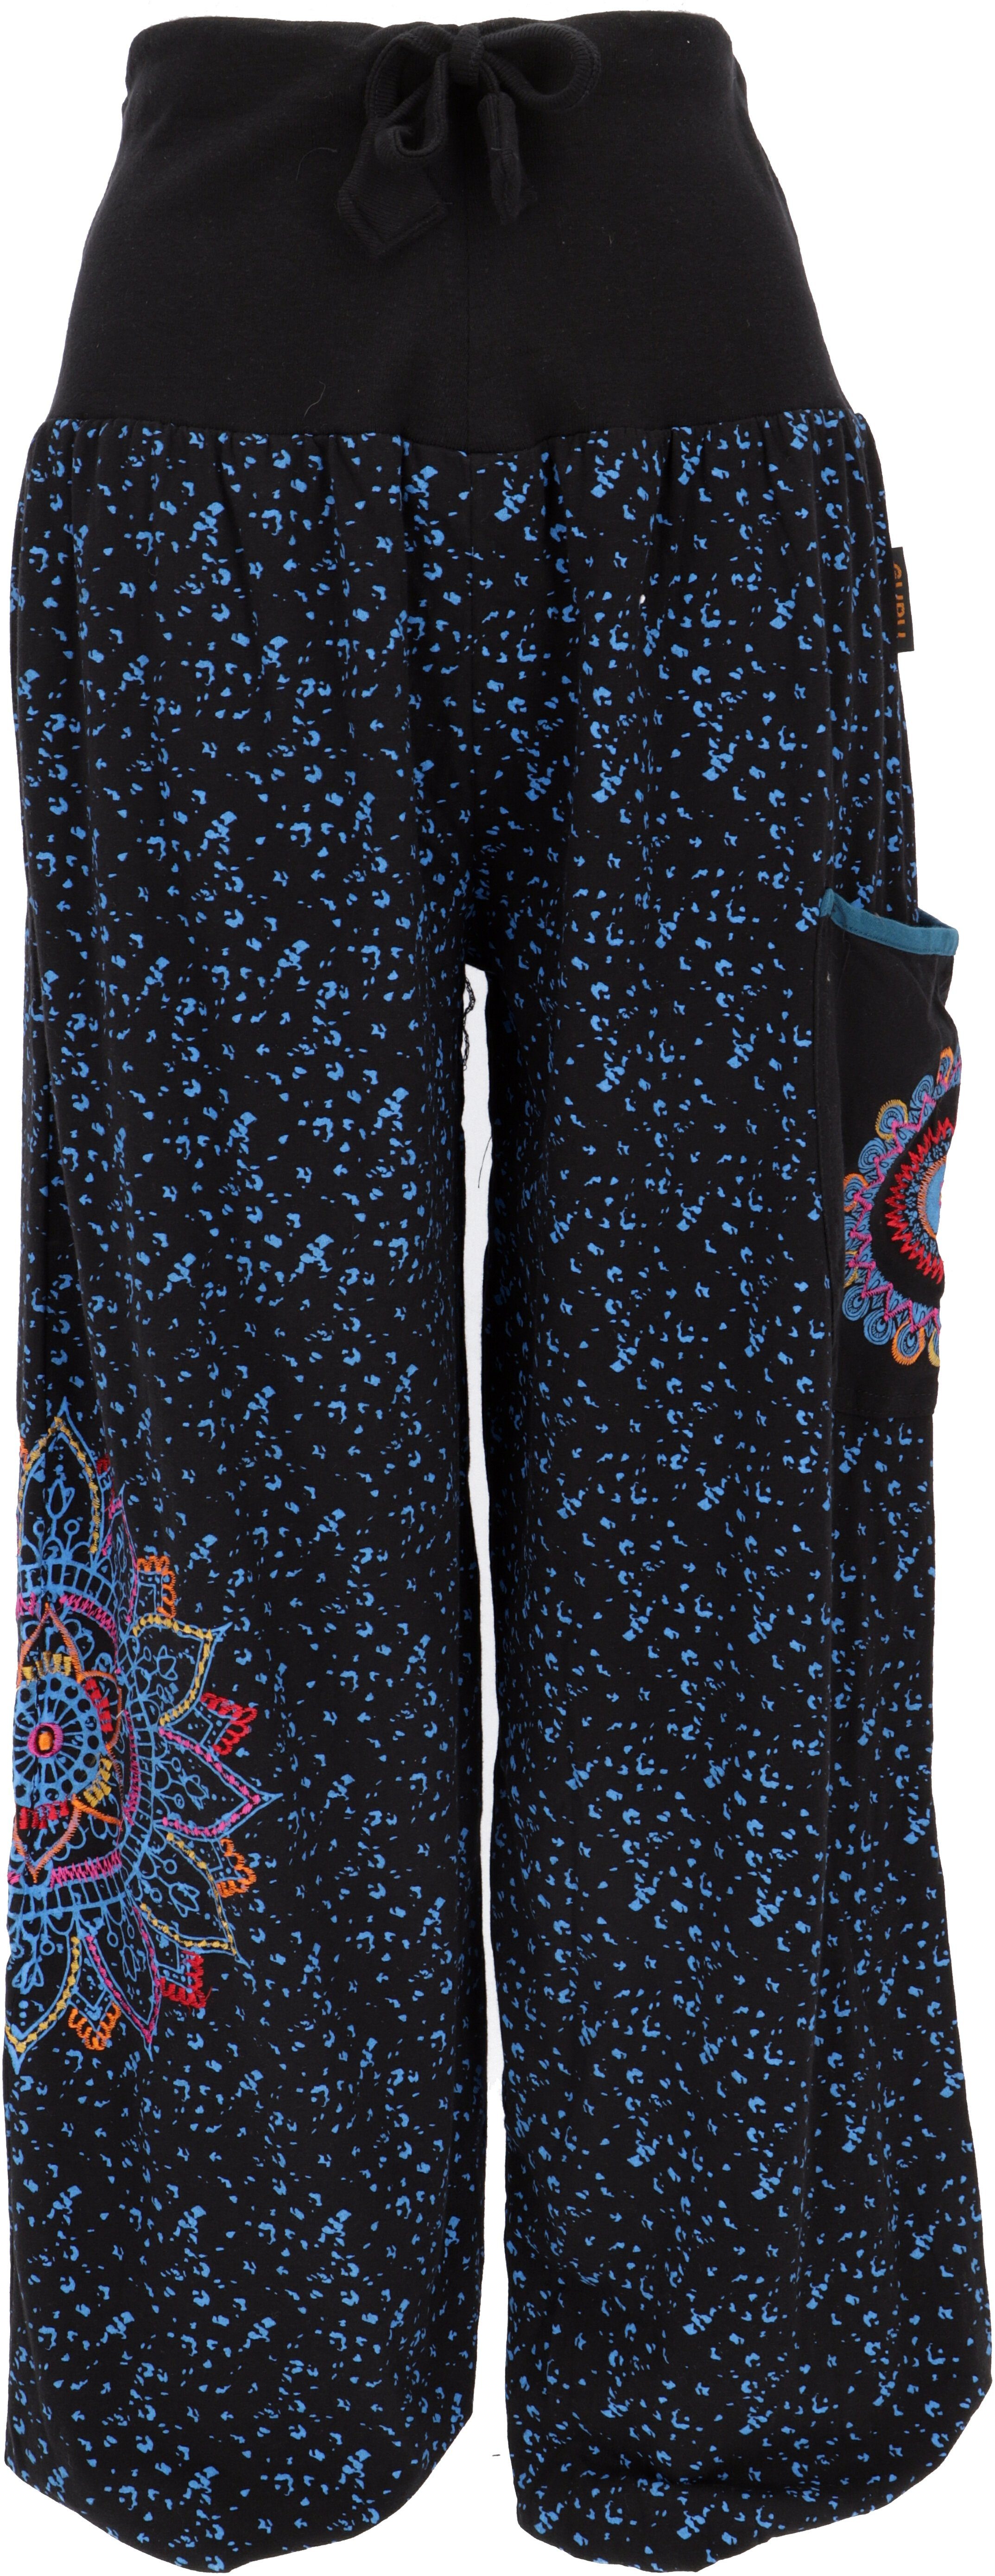 Guru-Shop Relaxhose Weite Pluderhose mit breitem Bund und.. Ethno Style, alternative Bekleidung schwarz/blau